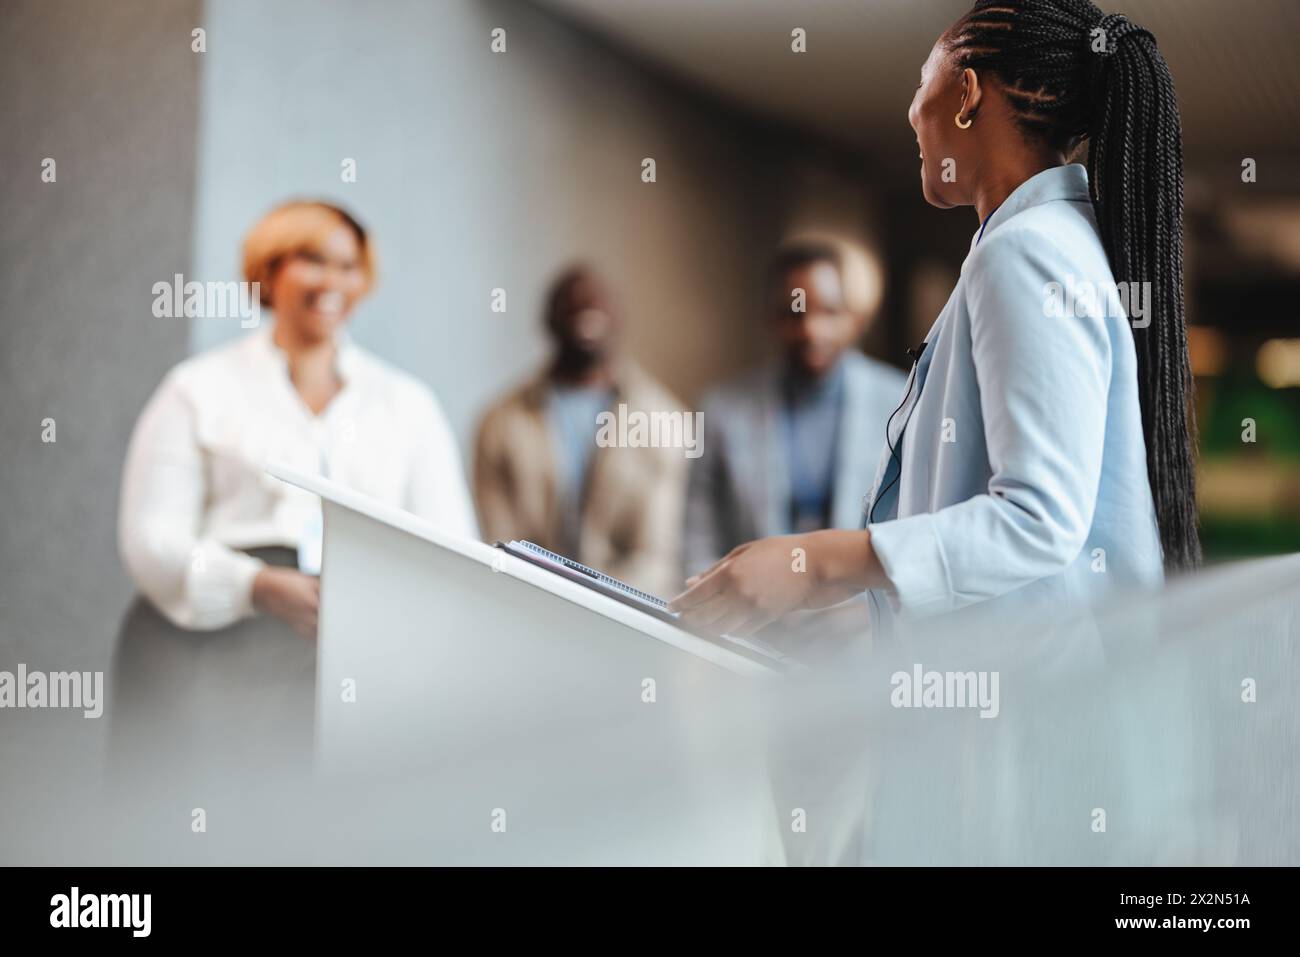 Junge Geschäftsfrau, die selbstbewusst auf einem Podium während einer Firmenveranstaltung präsentiert. Weibliche Profis, die ein Publikum von Unternehmern anspricht, darstellen Stockfoto